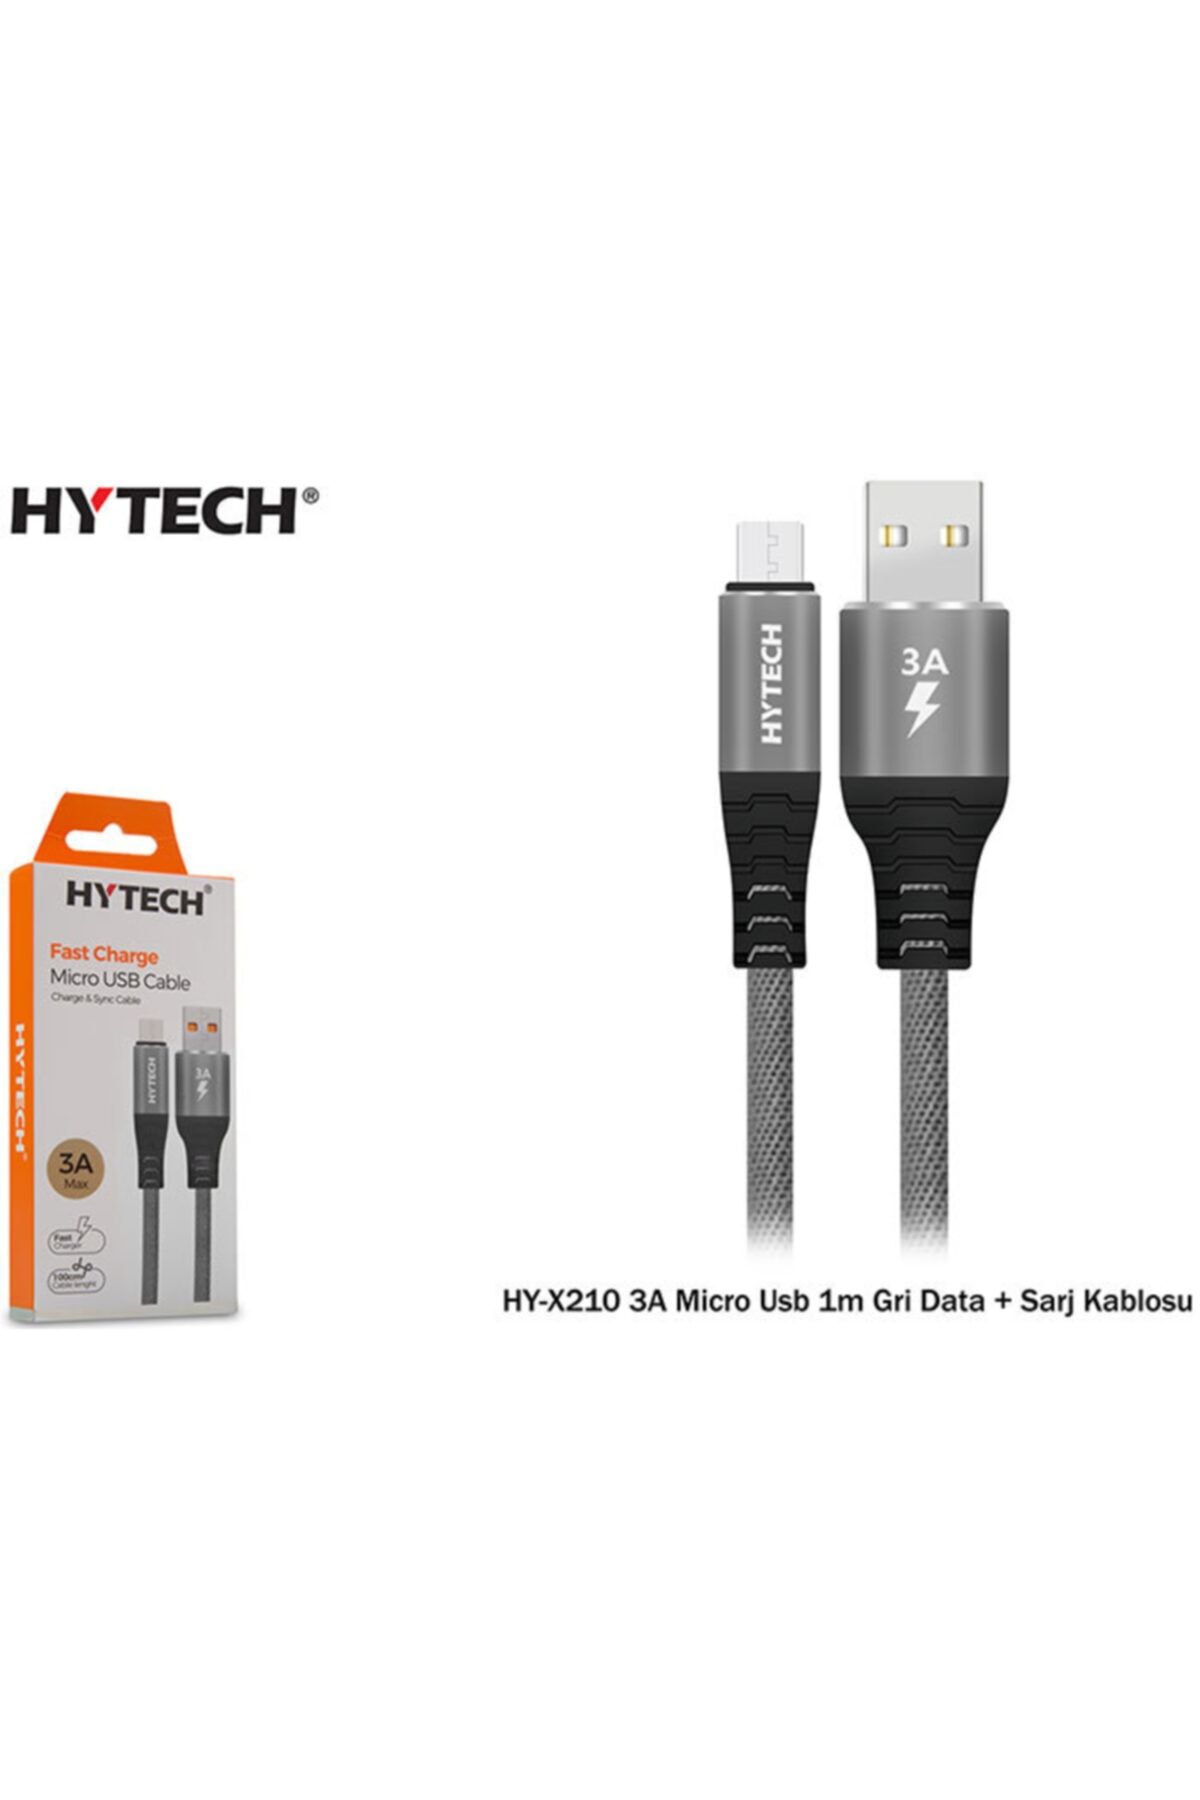 Hytech Hy-x210 3a Micro Usb 1m Gri Data + Sarj Kablosu